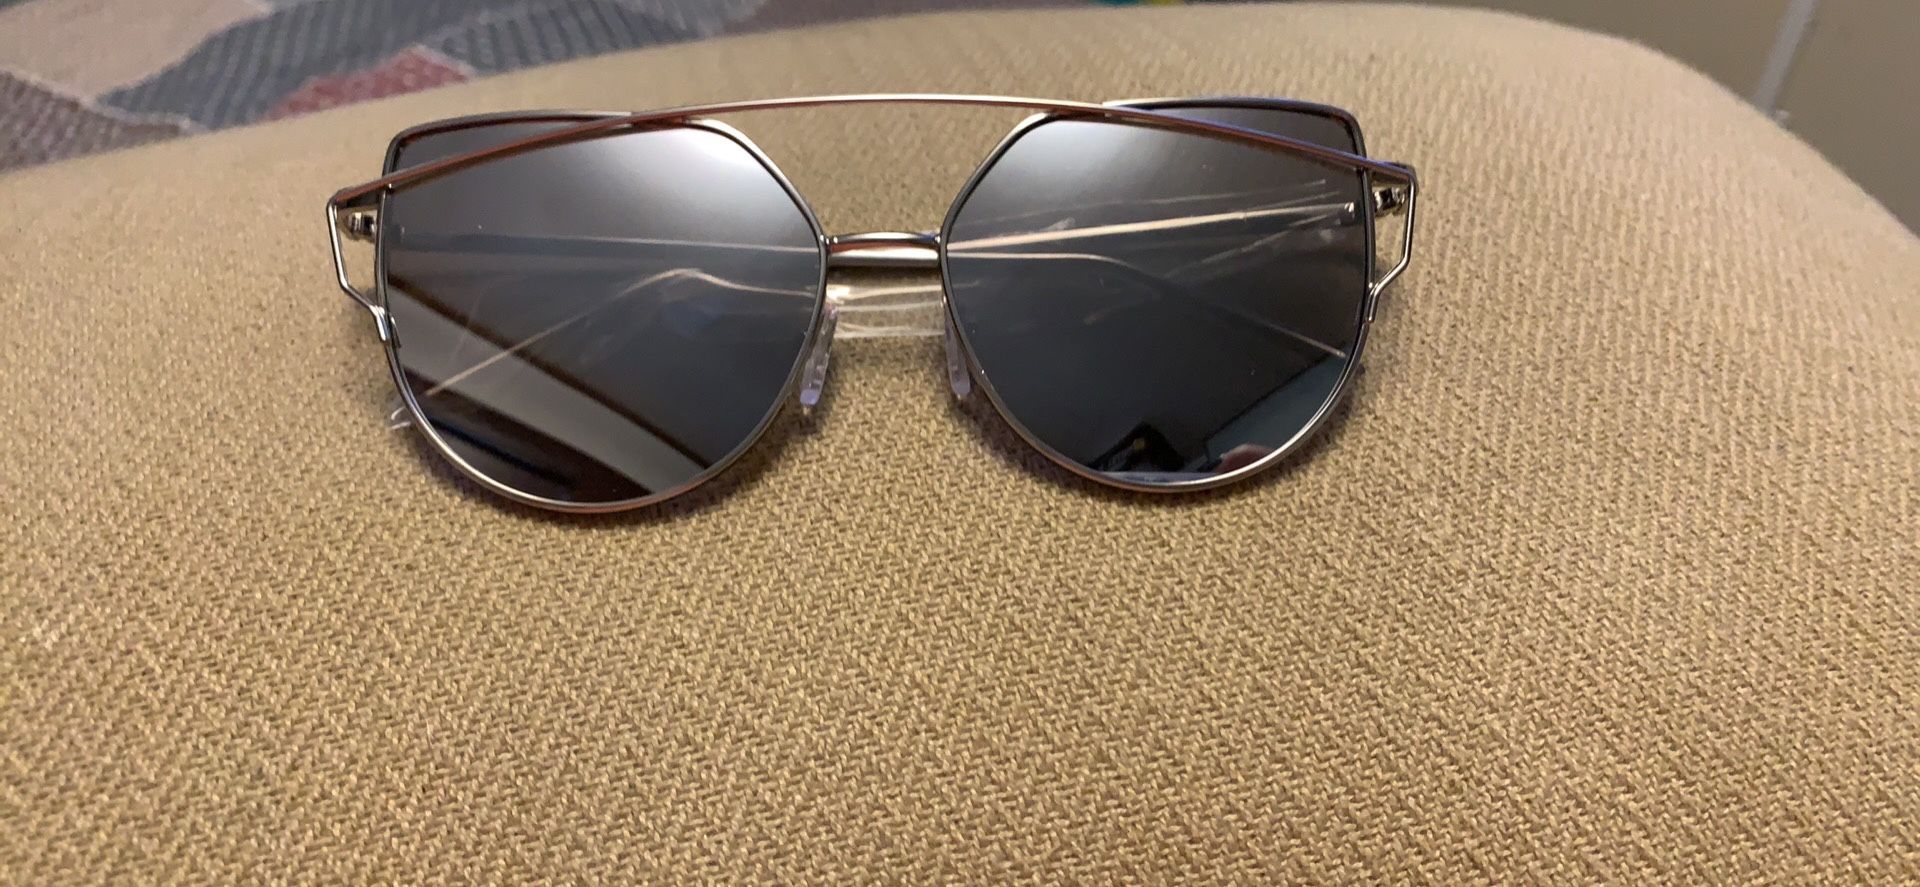 Women’s mirrored sunglasses